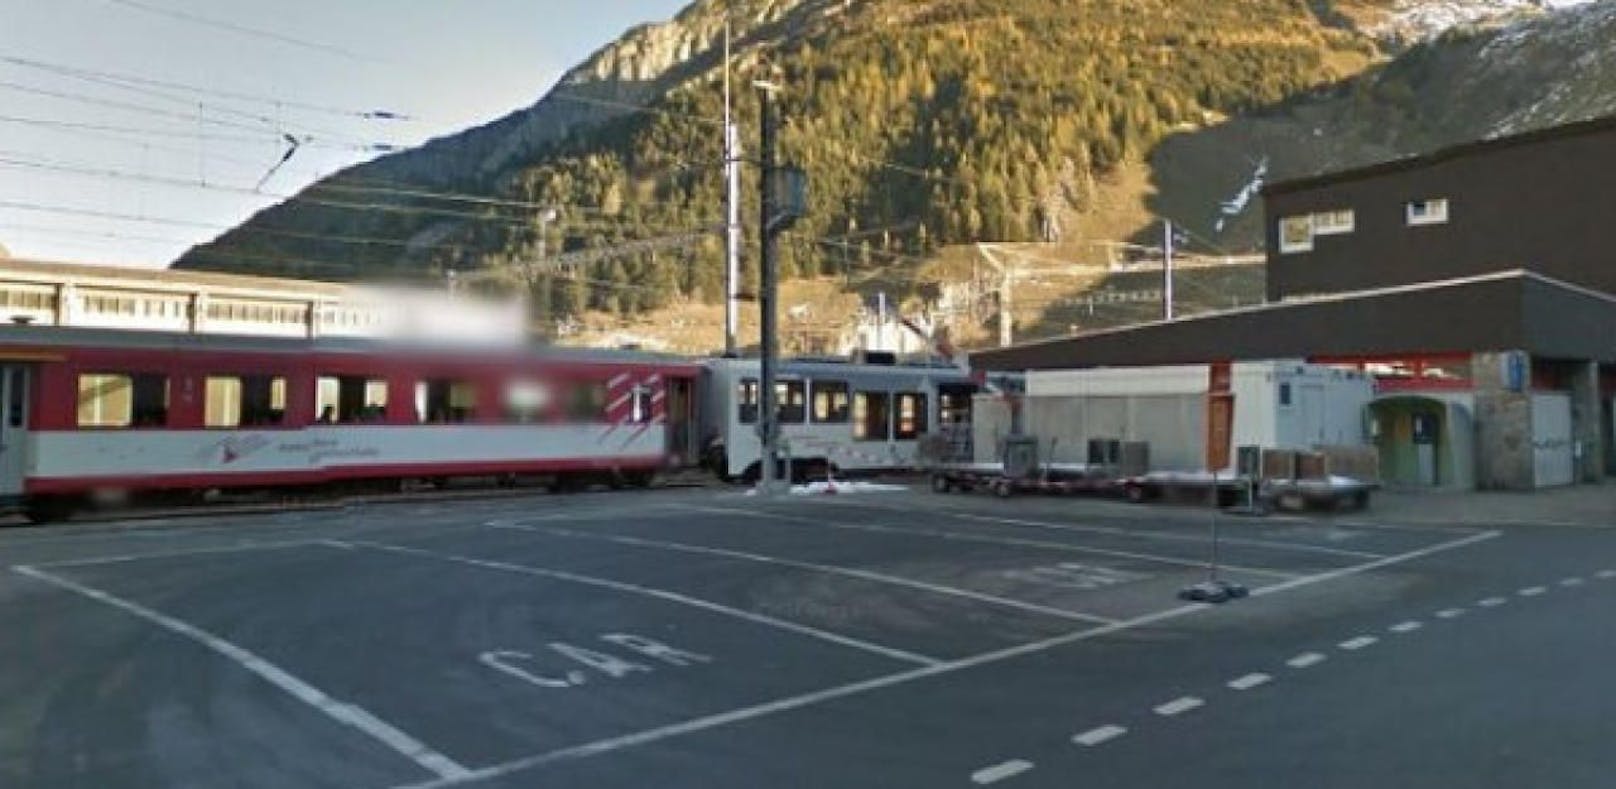 27 Verletzte bei Bahn-Crash in der Schweiz